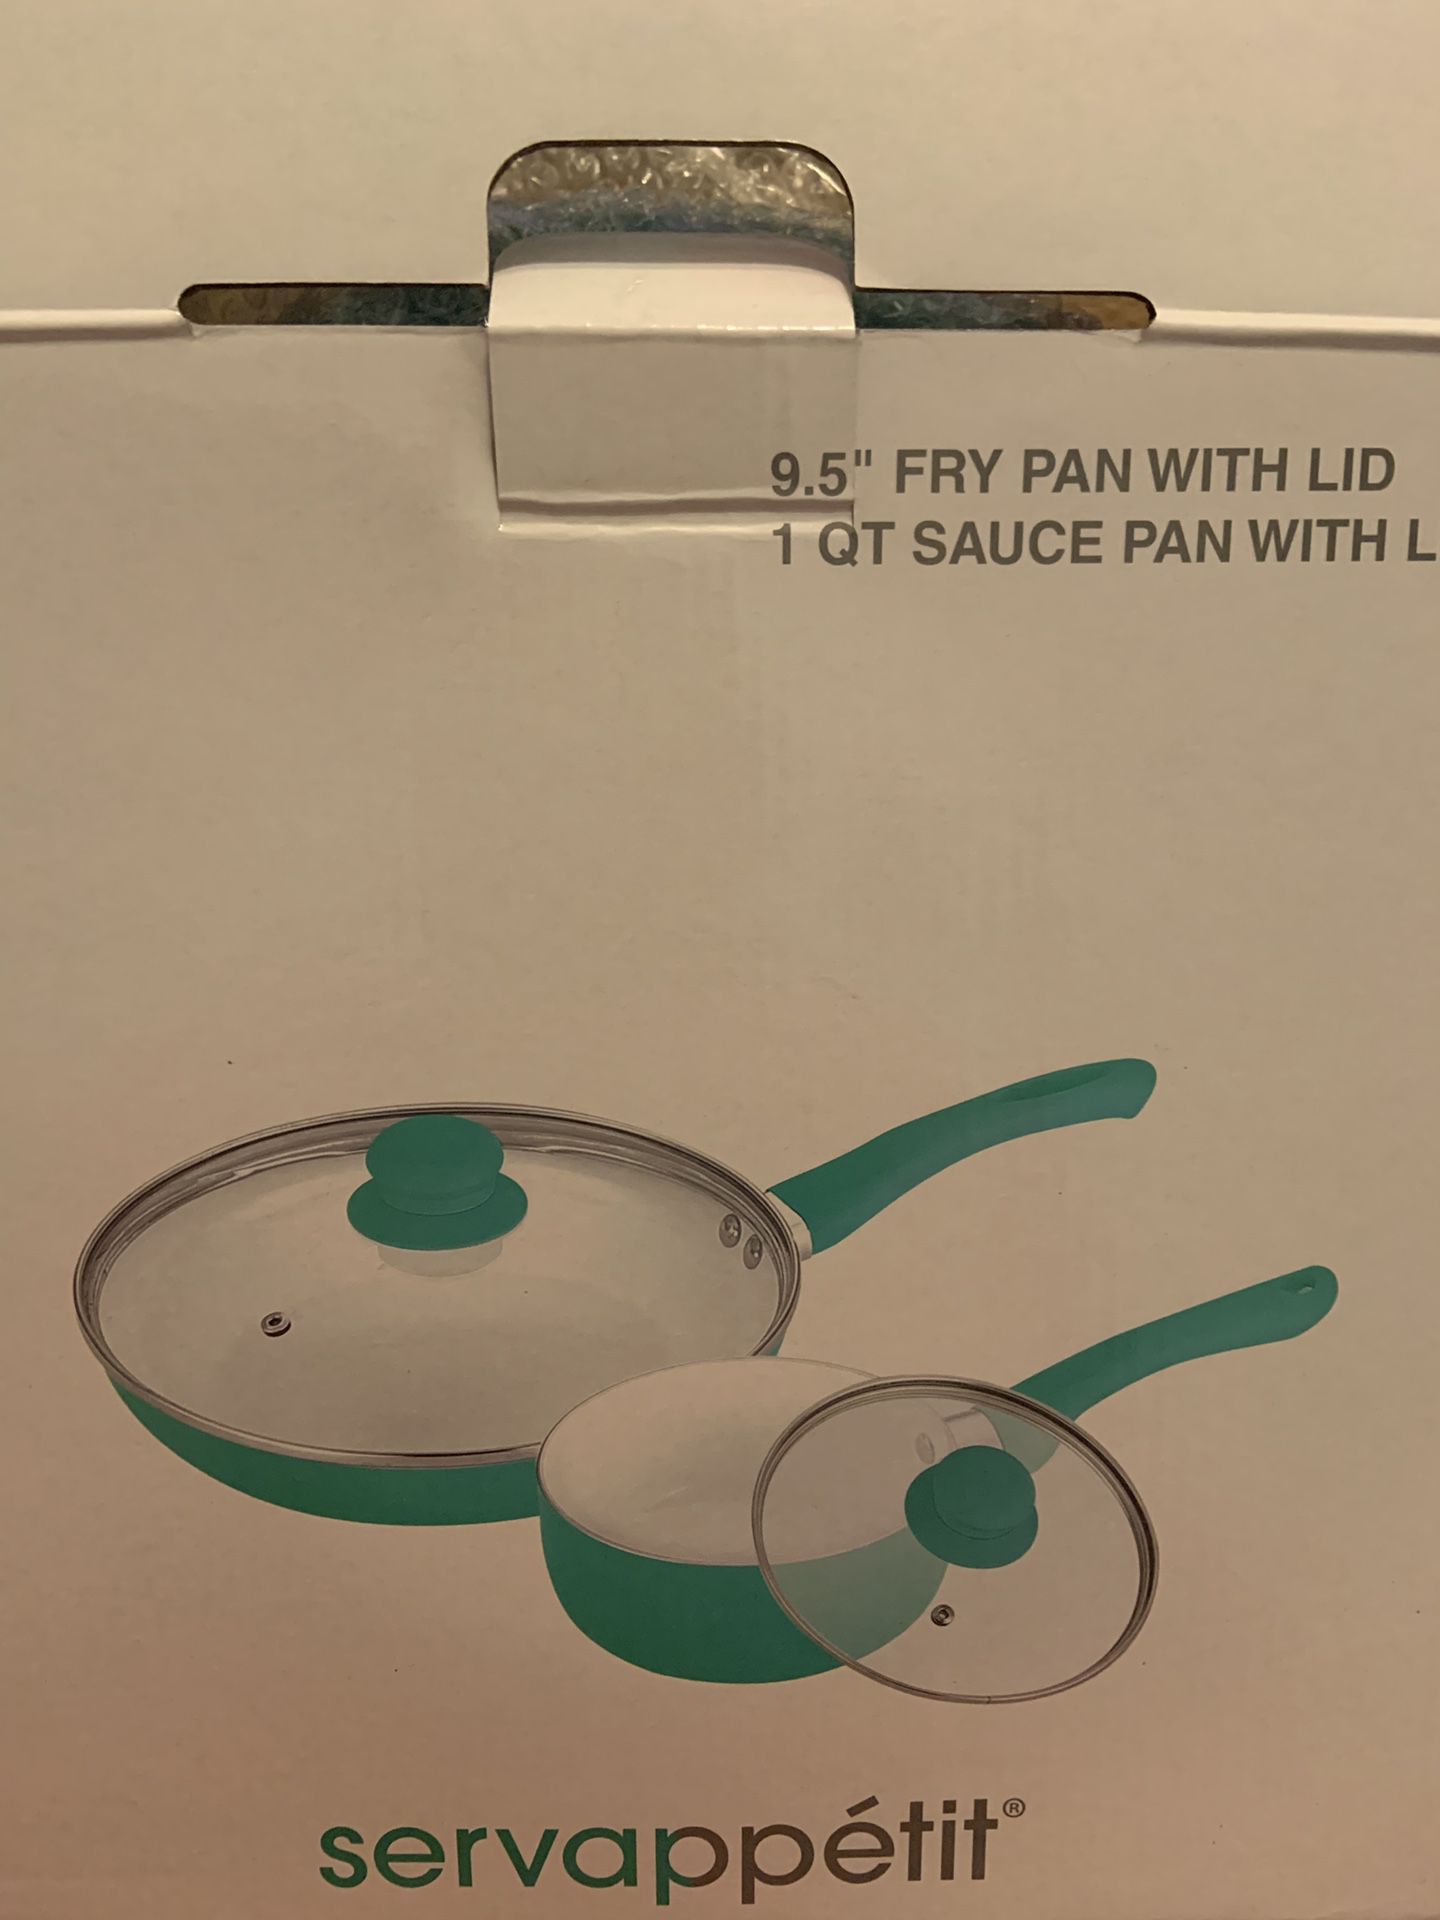 Servappetit fry pan and sauce pan